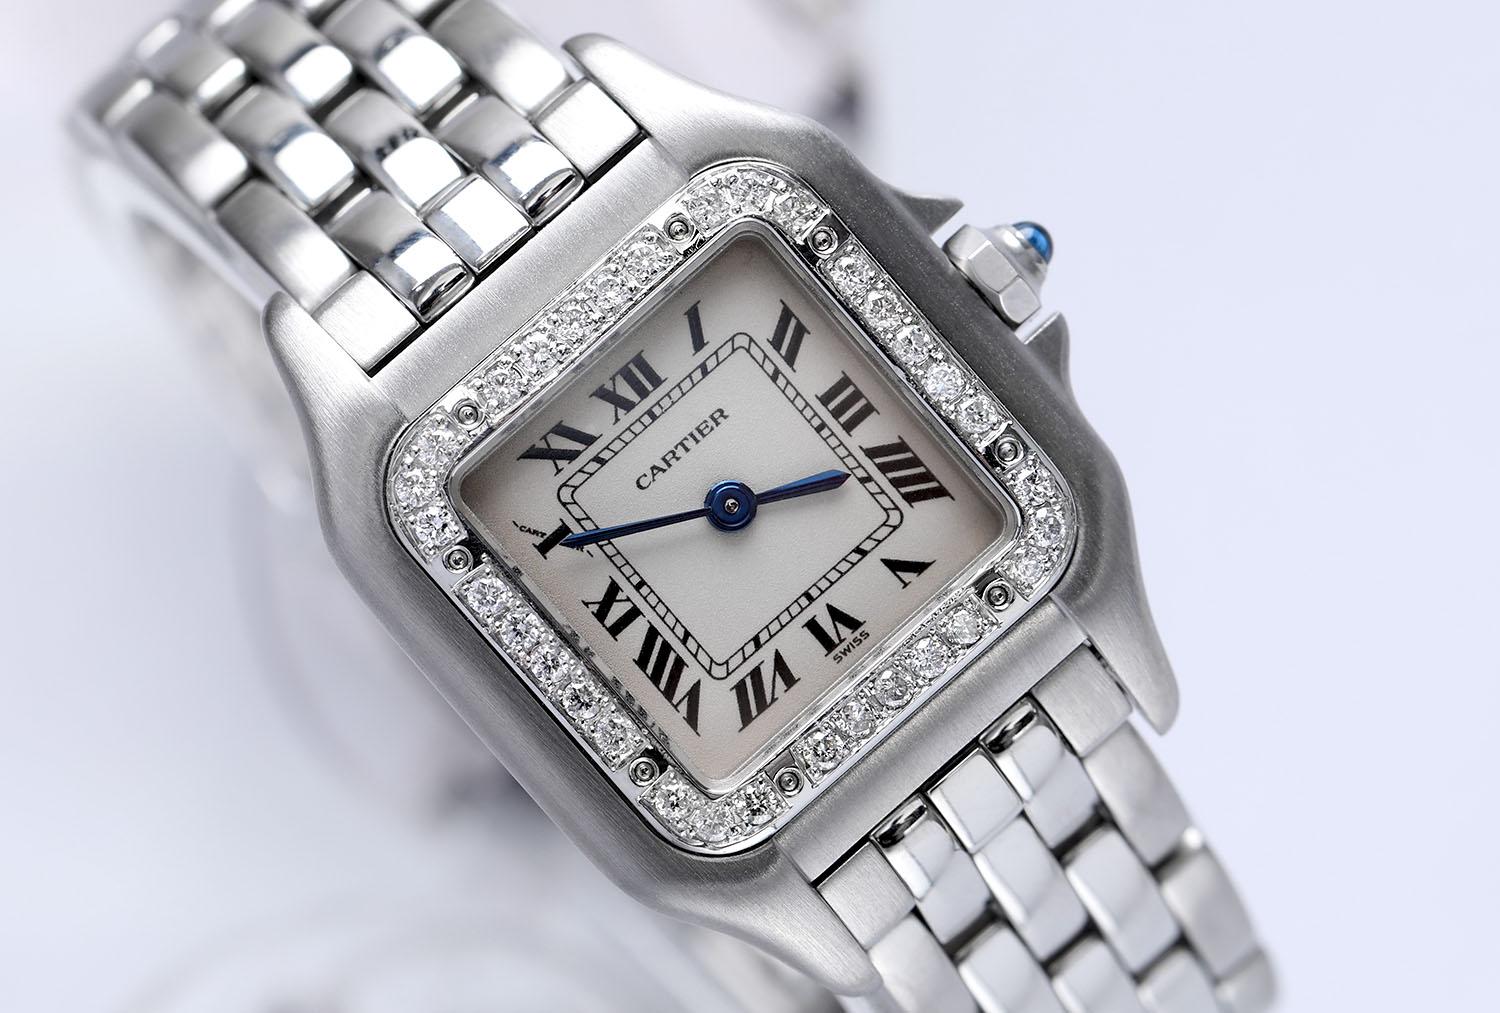 Diamant-Lünette wurde nach dem Markt mit 100% natürlichen Diamanten in F Farbe, VS/SI Klarheit gesetzt. Die Uhr wurde professionell poliert und hat keine sichtbaren Kratzer oder Flecken. Armband kann 6 Zoll Handgelenk passen.

Der Verkauf erfolgt